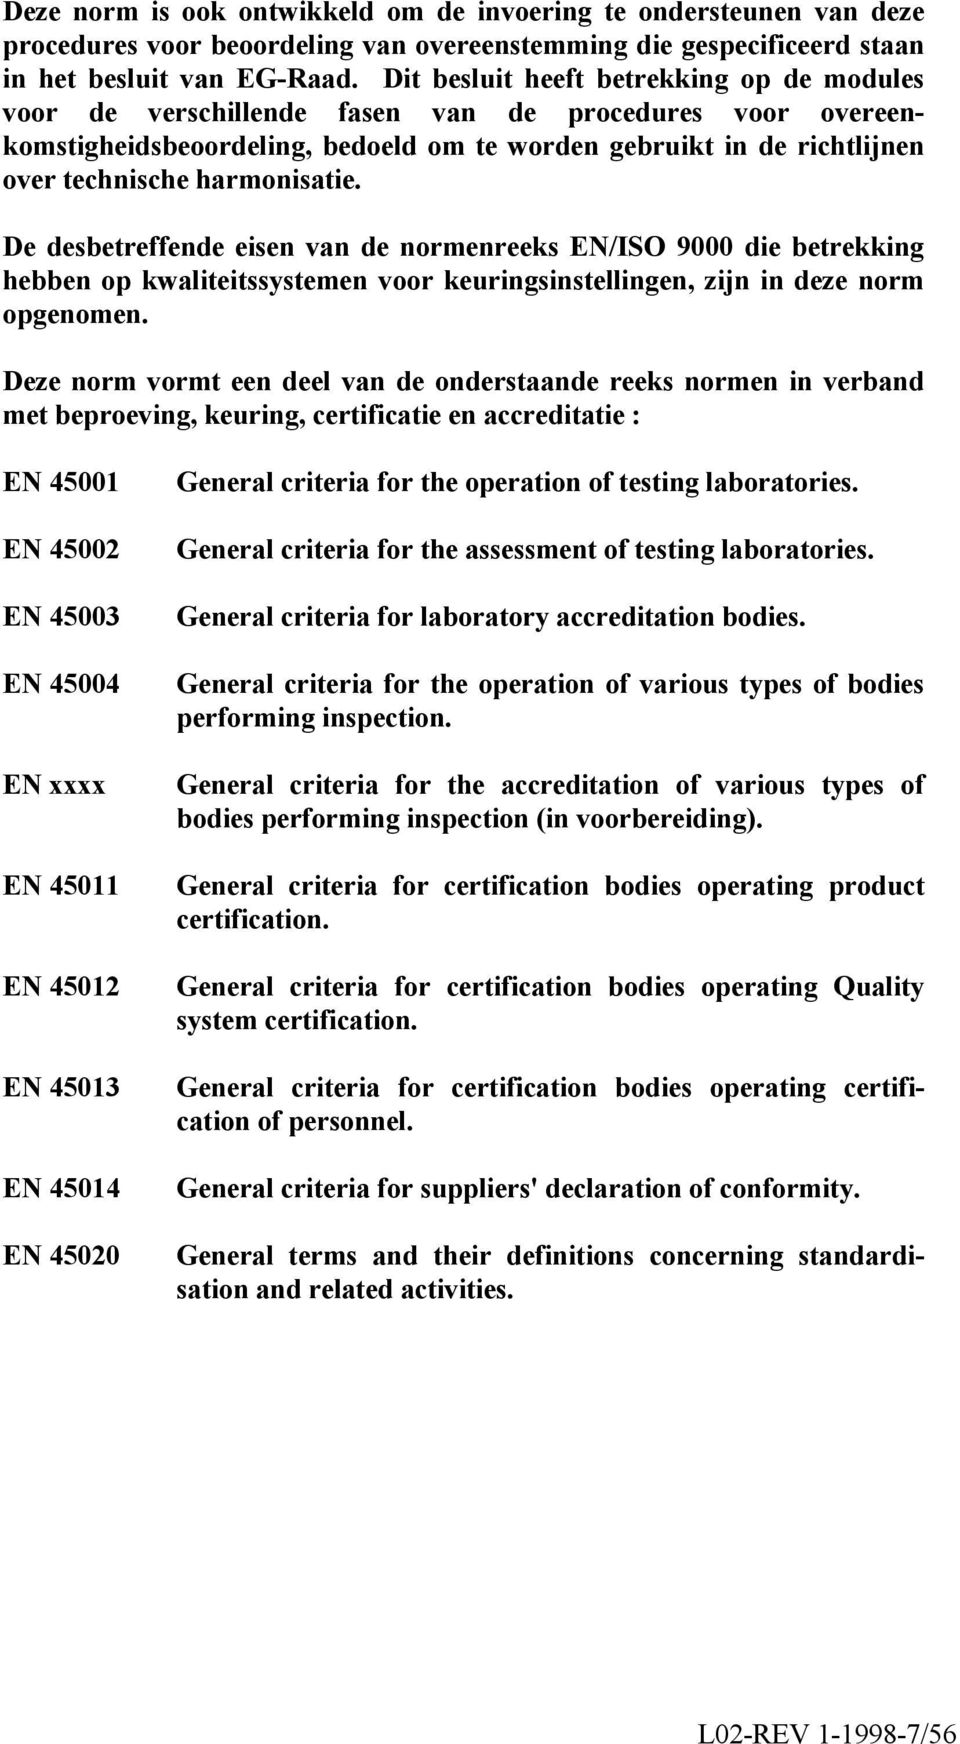 harmonisatie. De desbetreffende eisen van de normenreeks EN/ISO 9000 die betrekking hebben op kwaliteitssystemen voor keuringsinstellingen, zijn in deze norm opgenomen.